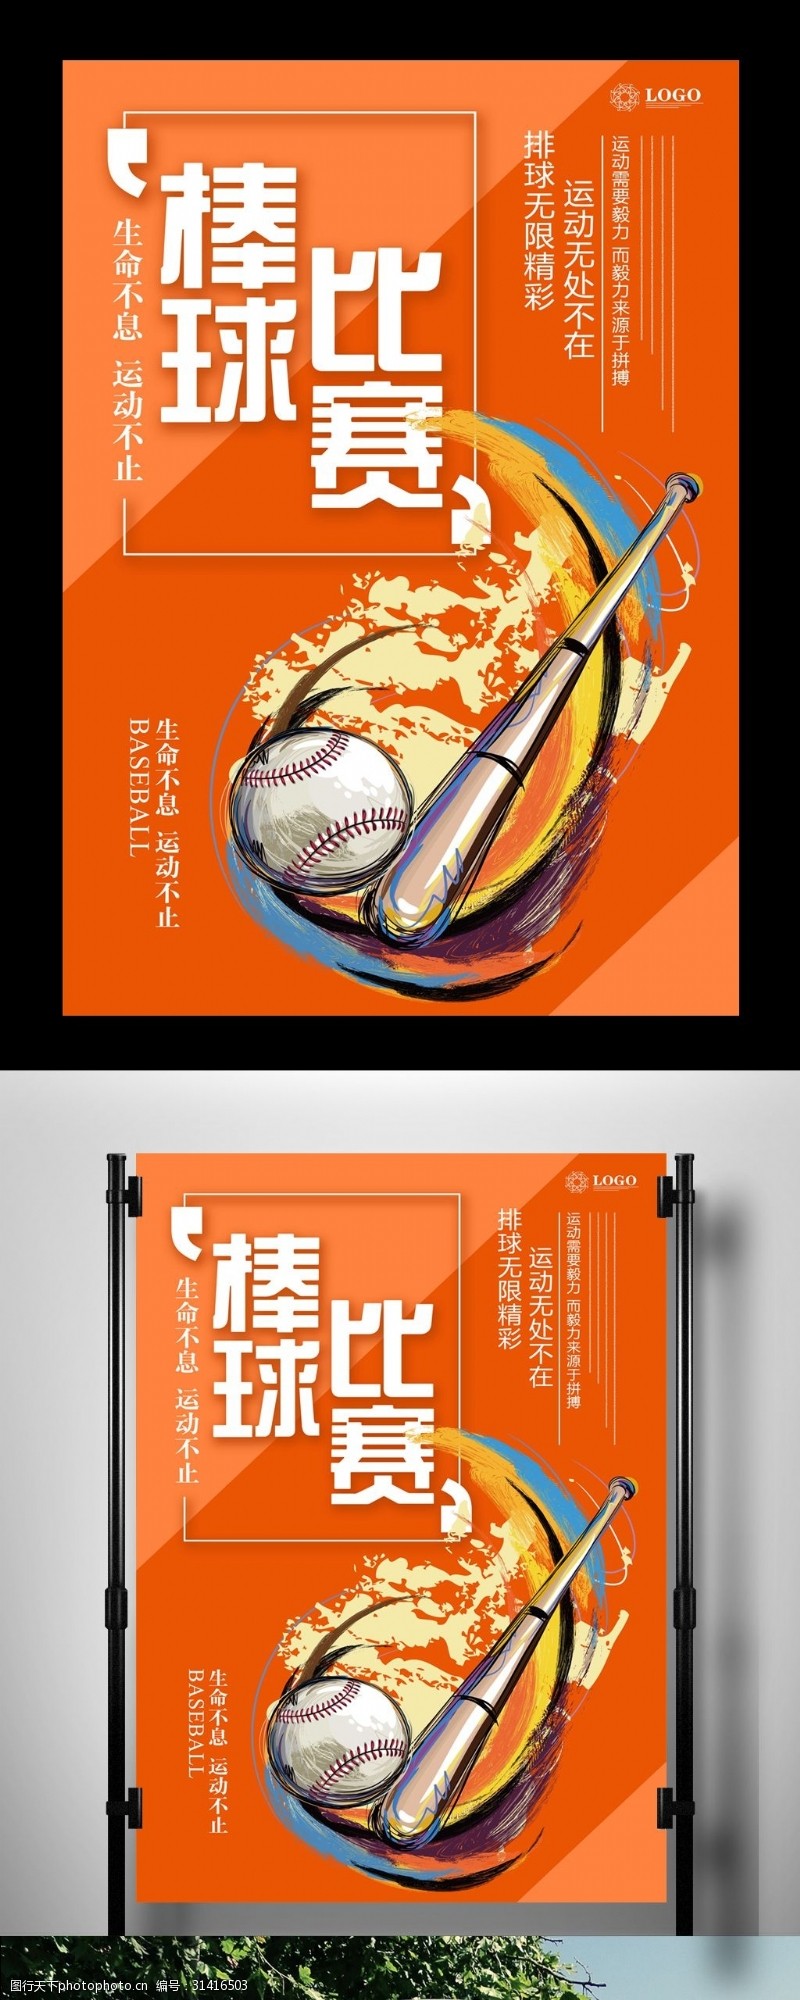 棒球运动员棒球比赛海报设计模板